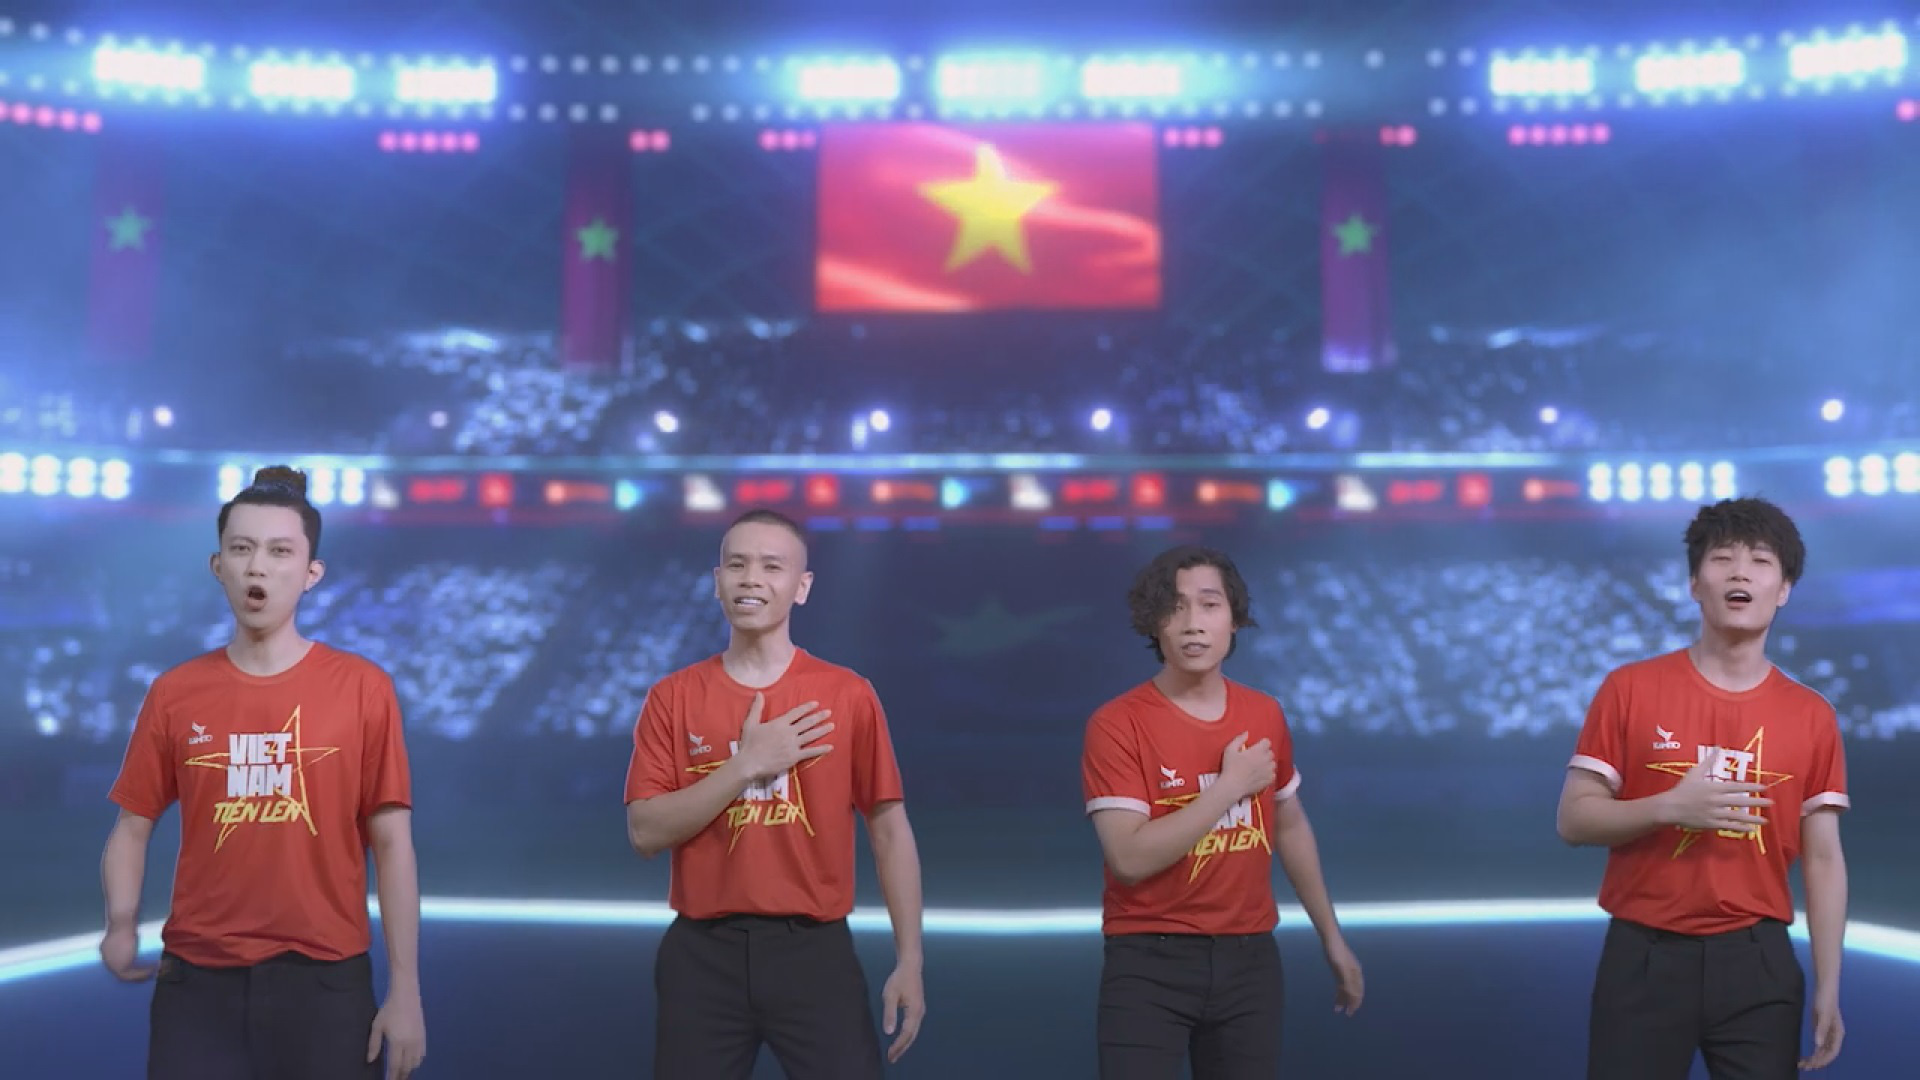 Huy Tuấn sáng tác Việt Nam tiến lên cổ vũ bóng đá và tinh thần Việt Nam mùa dịch - Ảnh 4.